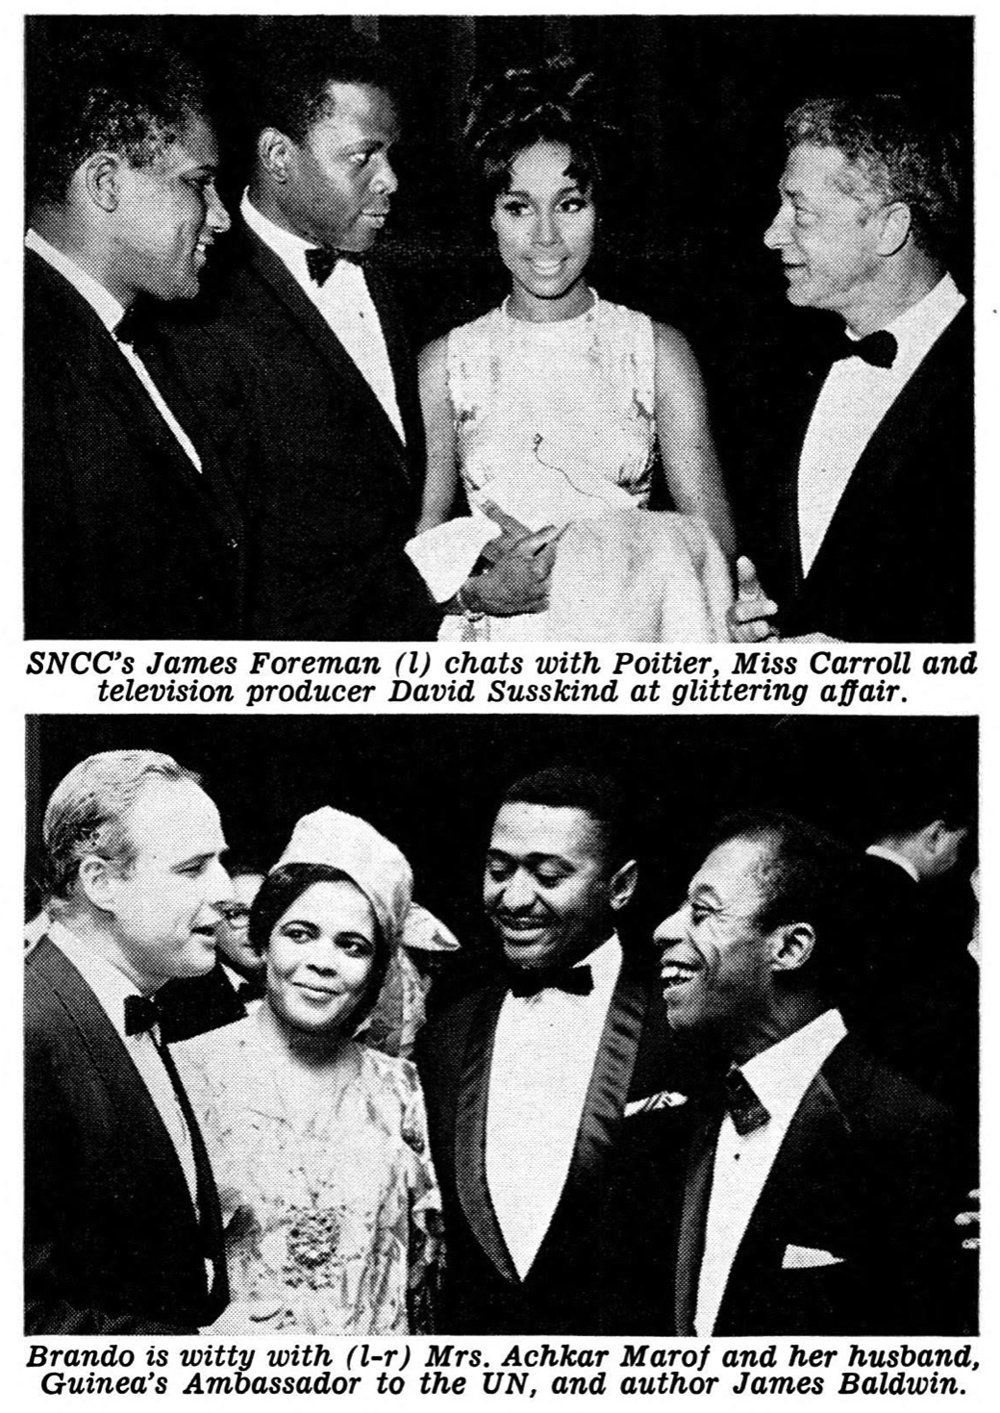 Photos of Sidney Poitier, Marlon Brando, James Baldwin, and Diahann Carroll.